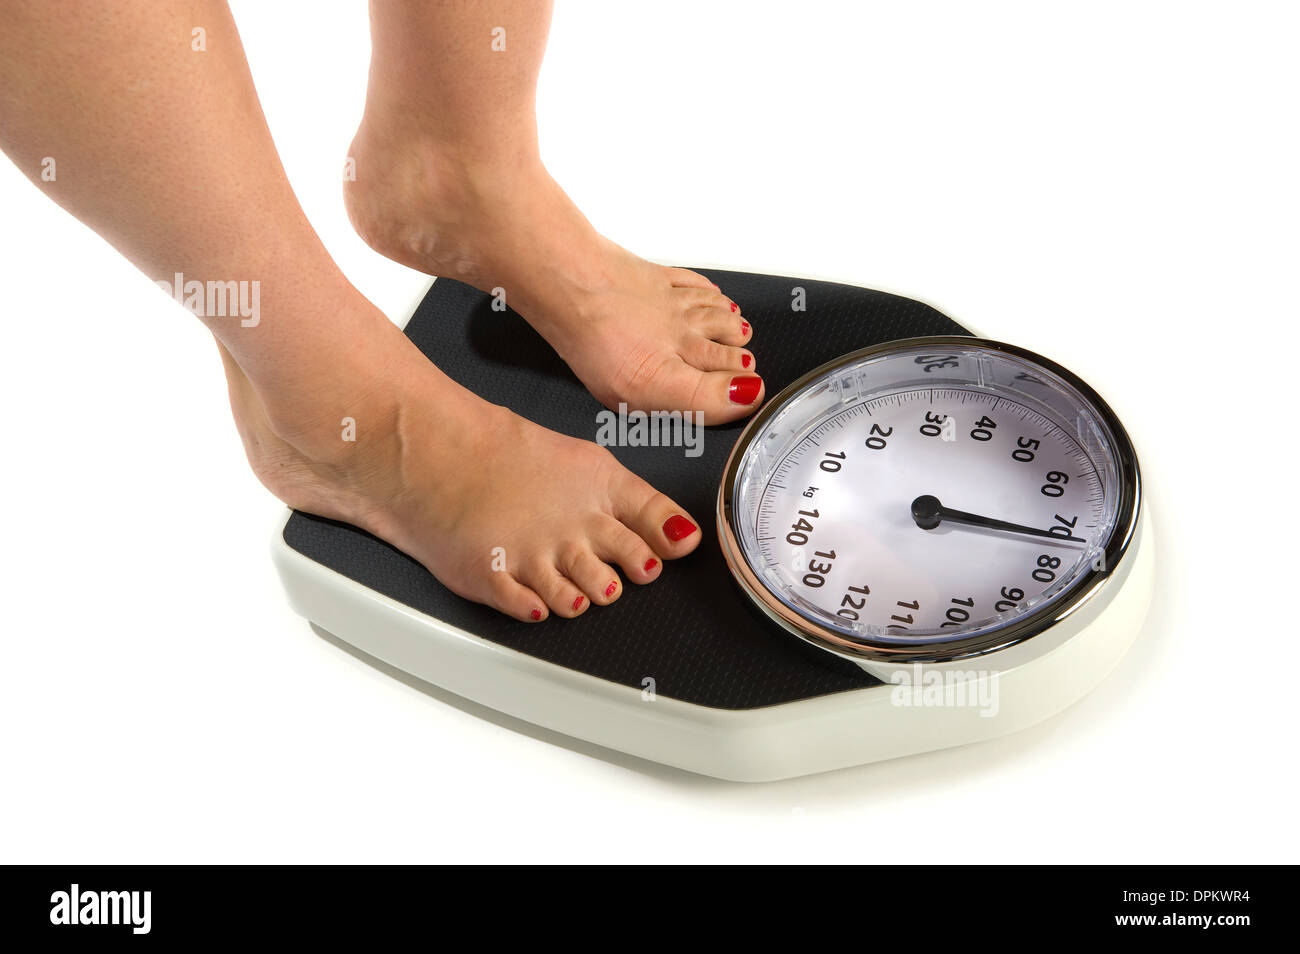 Весы на месяц мужчина. Повышение массы тела. Ноги на весах. Нормализация веса. Человек на весах.